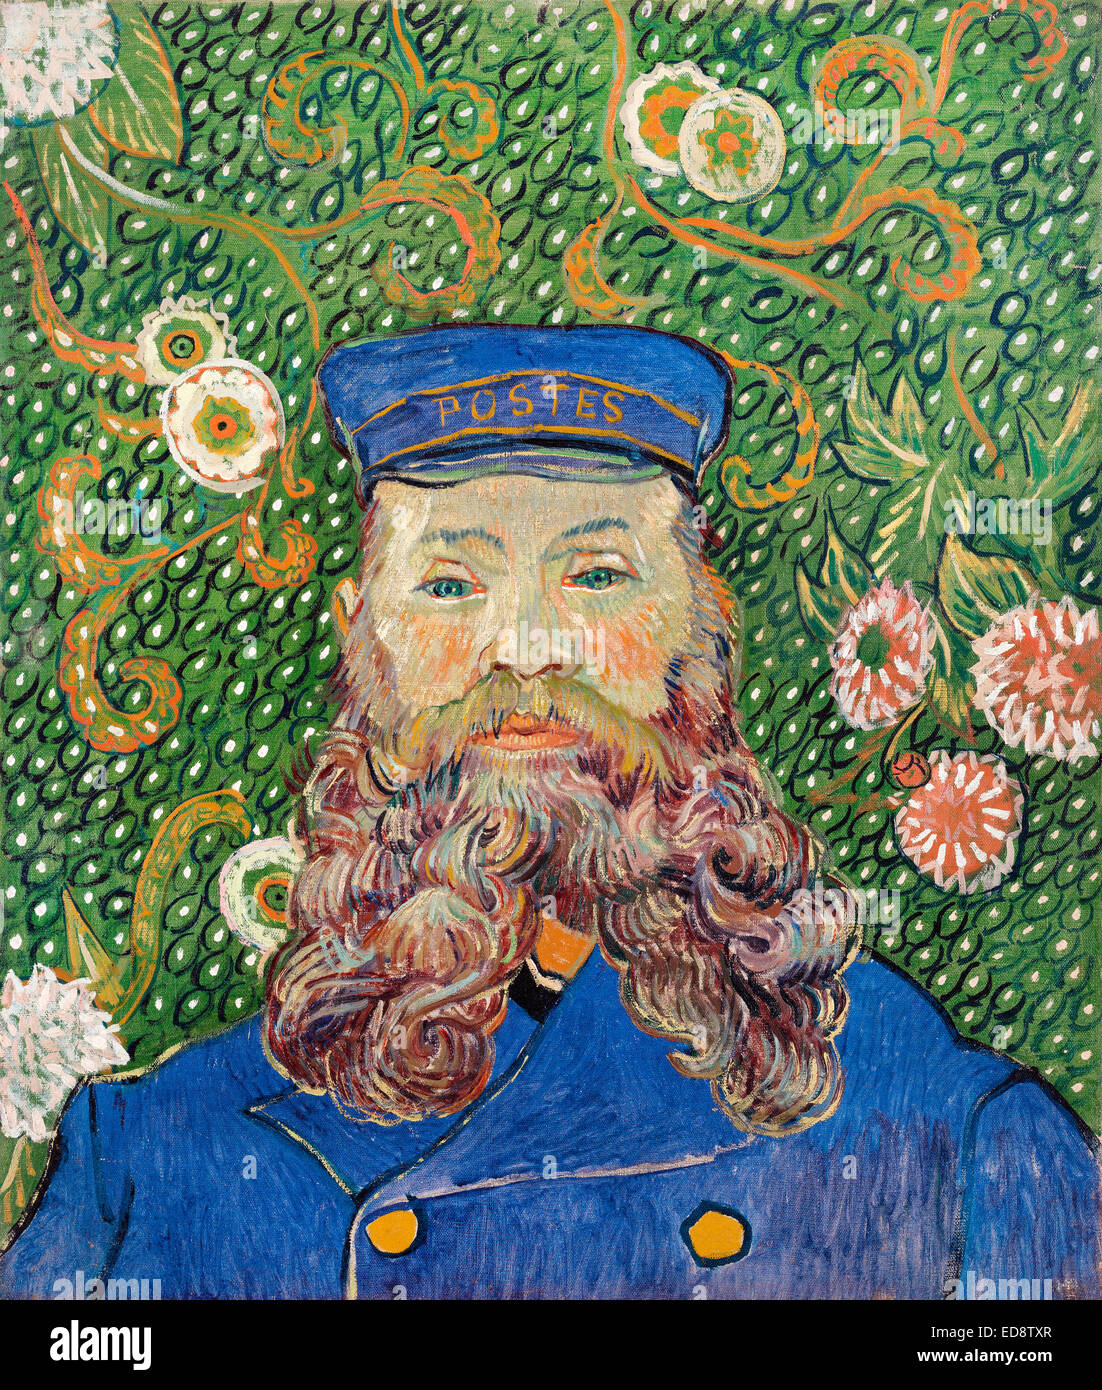 Vincent van Gogh, retrato del cartero Joseph Roulin. 1889. Posimpresionismo. Óleo sobre lienzo.Museo de Arte Moderno de Nueva York Foto de stock